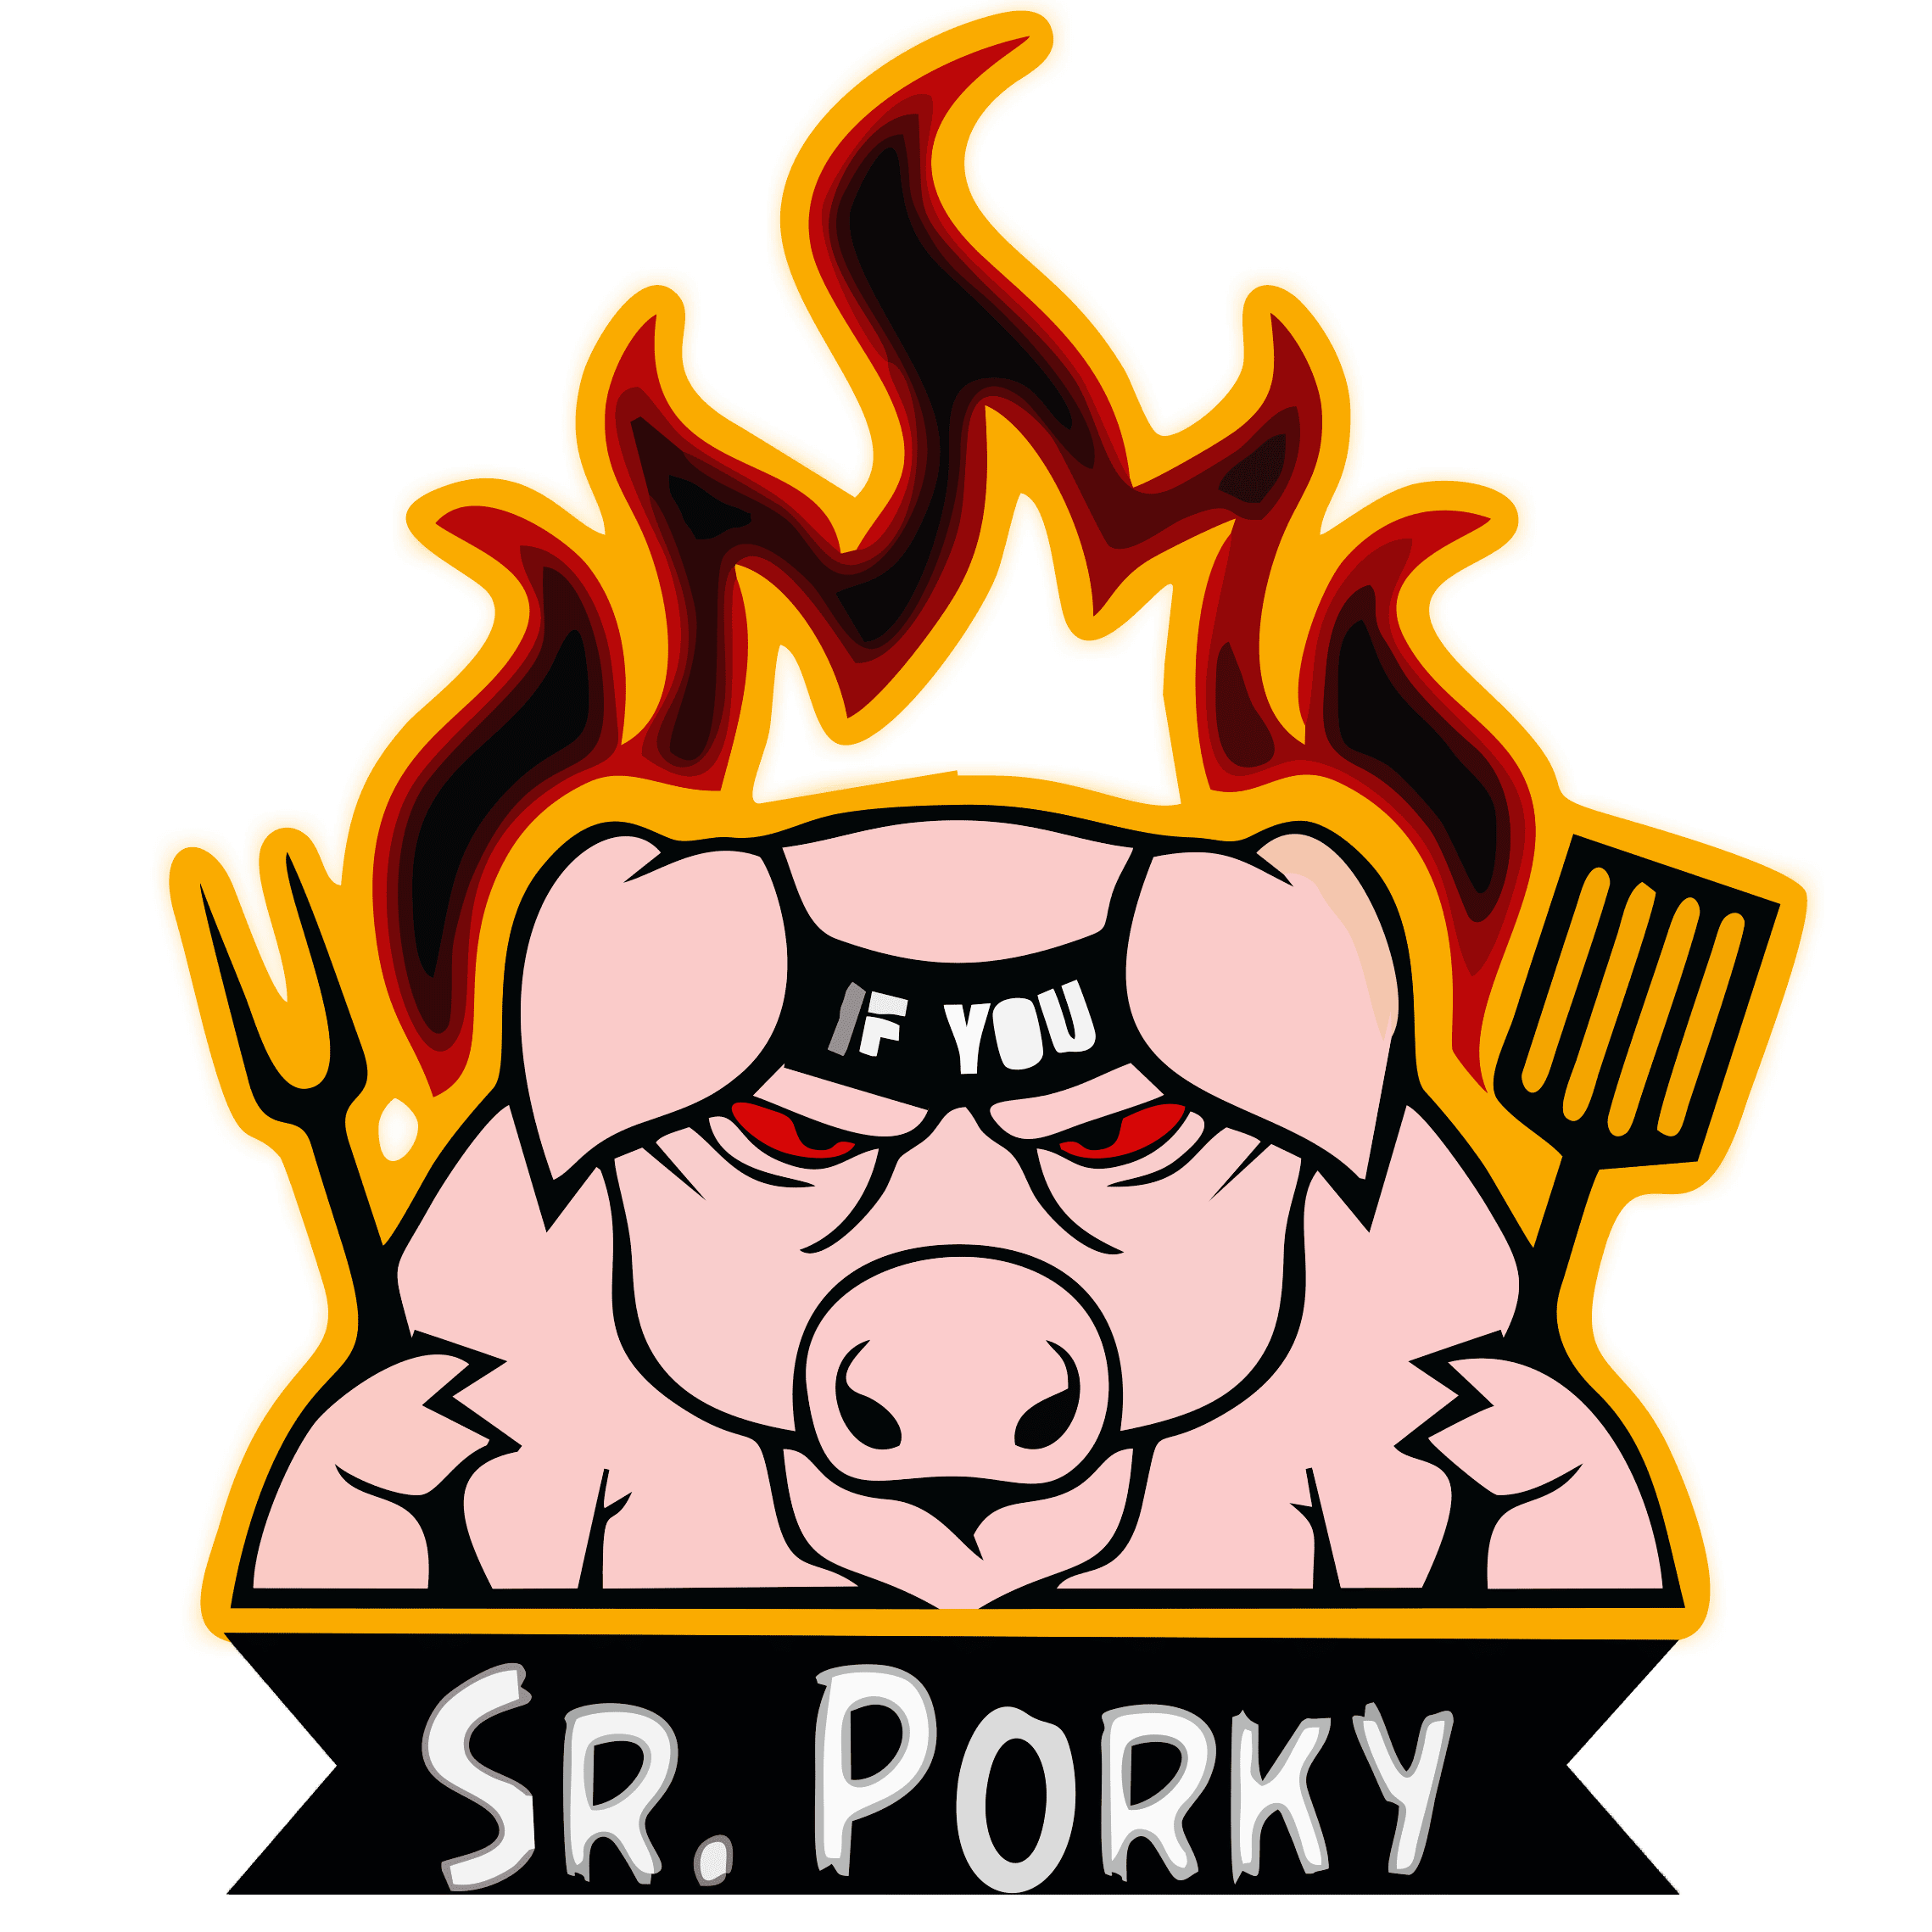 Sr. Porky